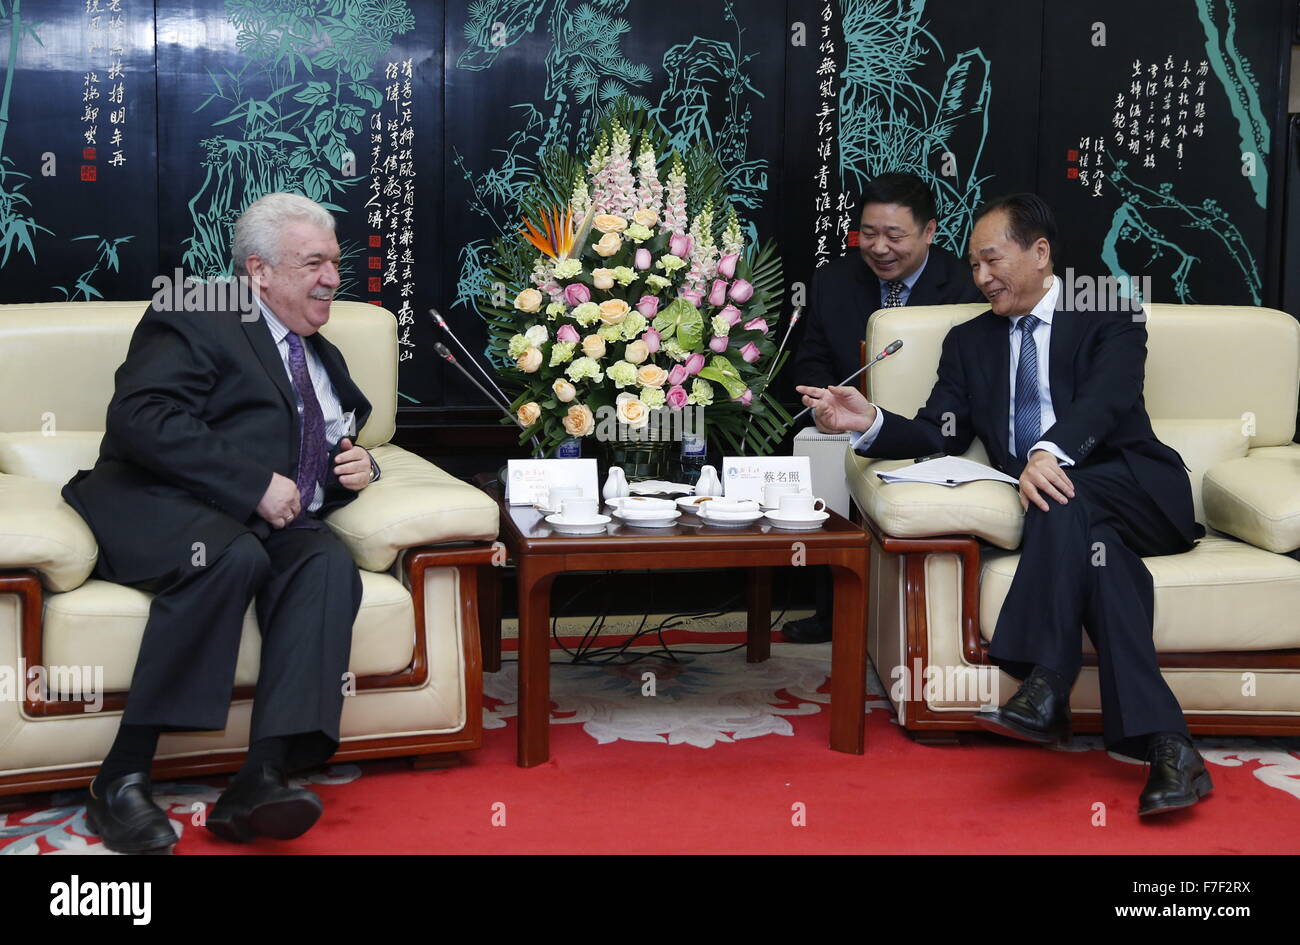 Beijing, Chine. 30Th Nov, 2015. Le Président de l'agence de presse Xinhua Cai Mingzhao (R) rencontre avec Mikhail Gusman, premier directeur général adjoint de l'agence de presse Tass, à Beijing, capitale de Chine, le 30 novembre 2015. © Ju Peng/Xinhua/Alamy Live News Banque D'Images